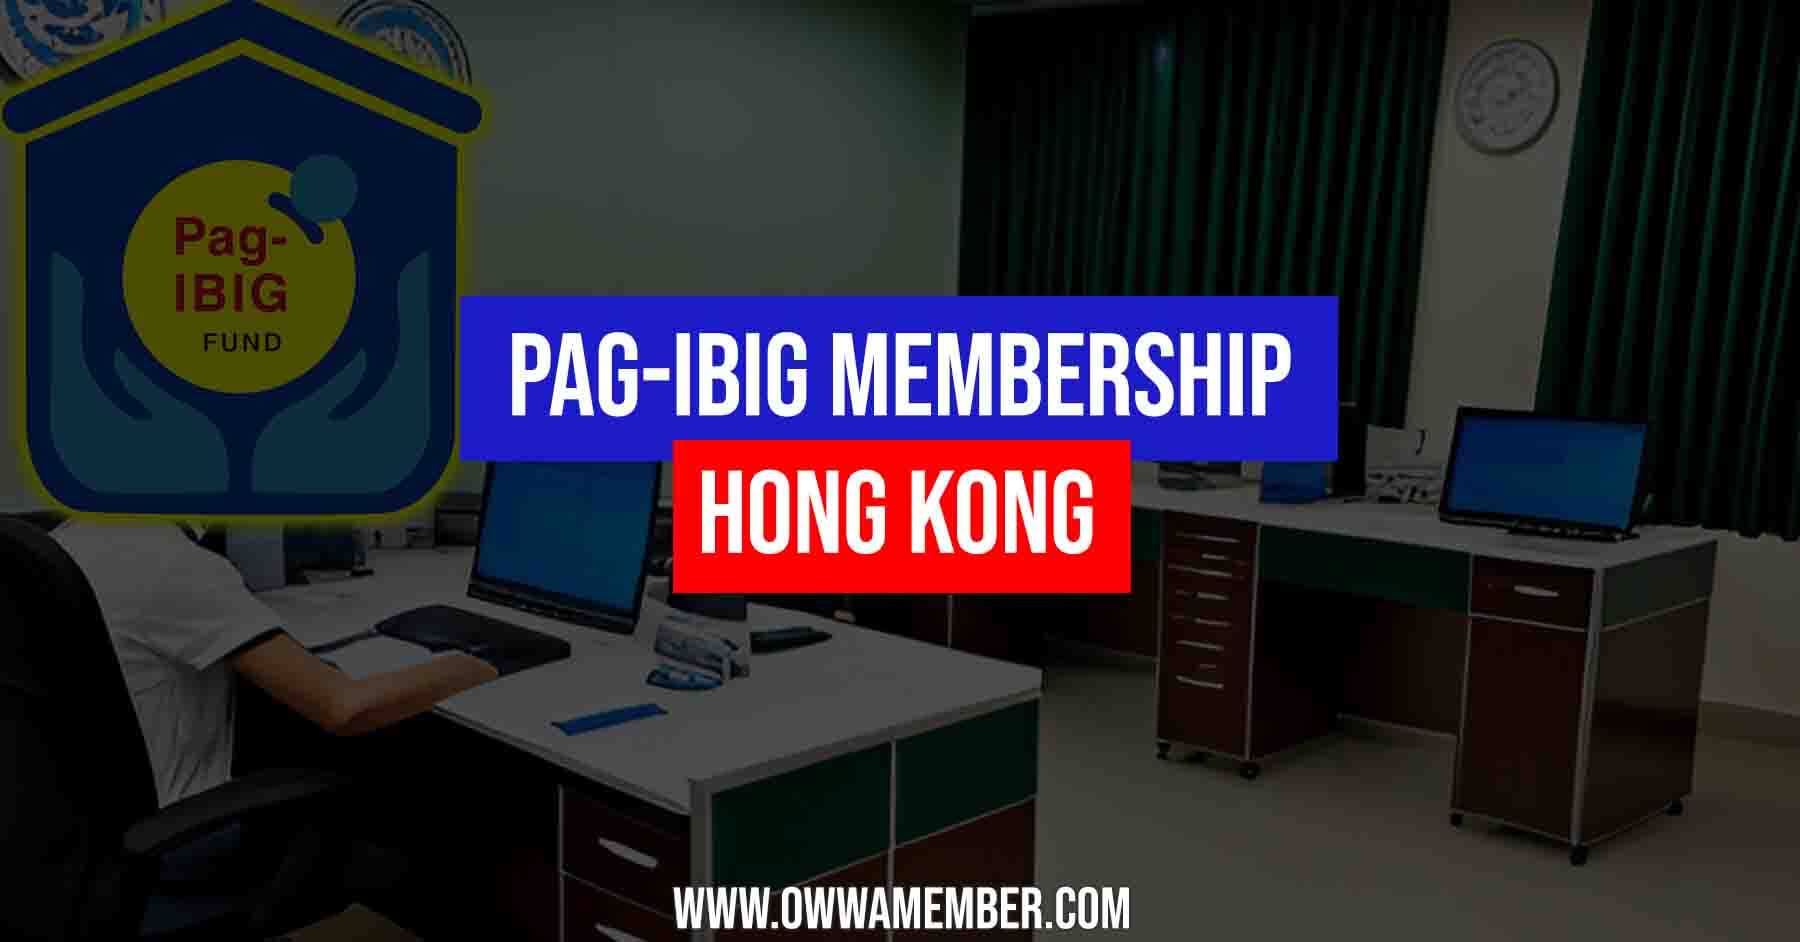 pagibig membership application in hong kong